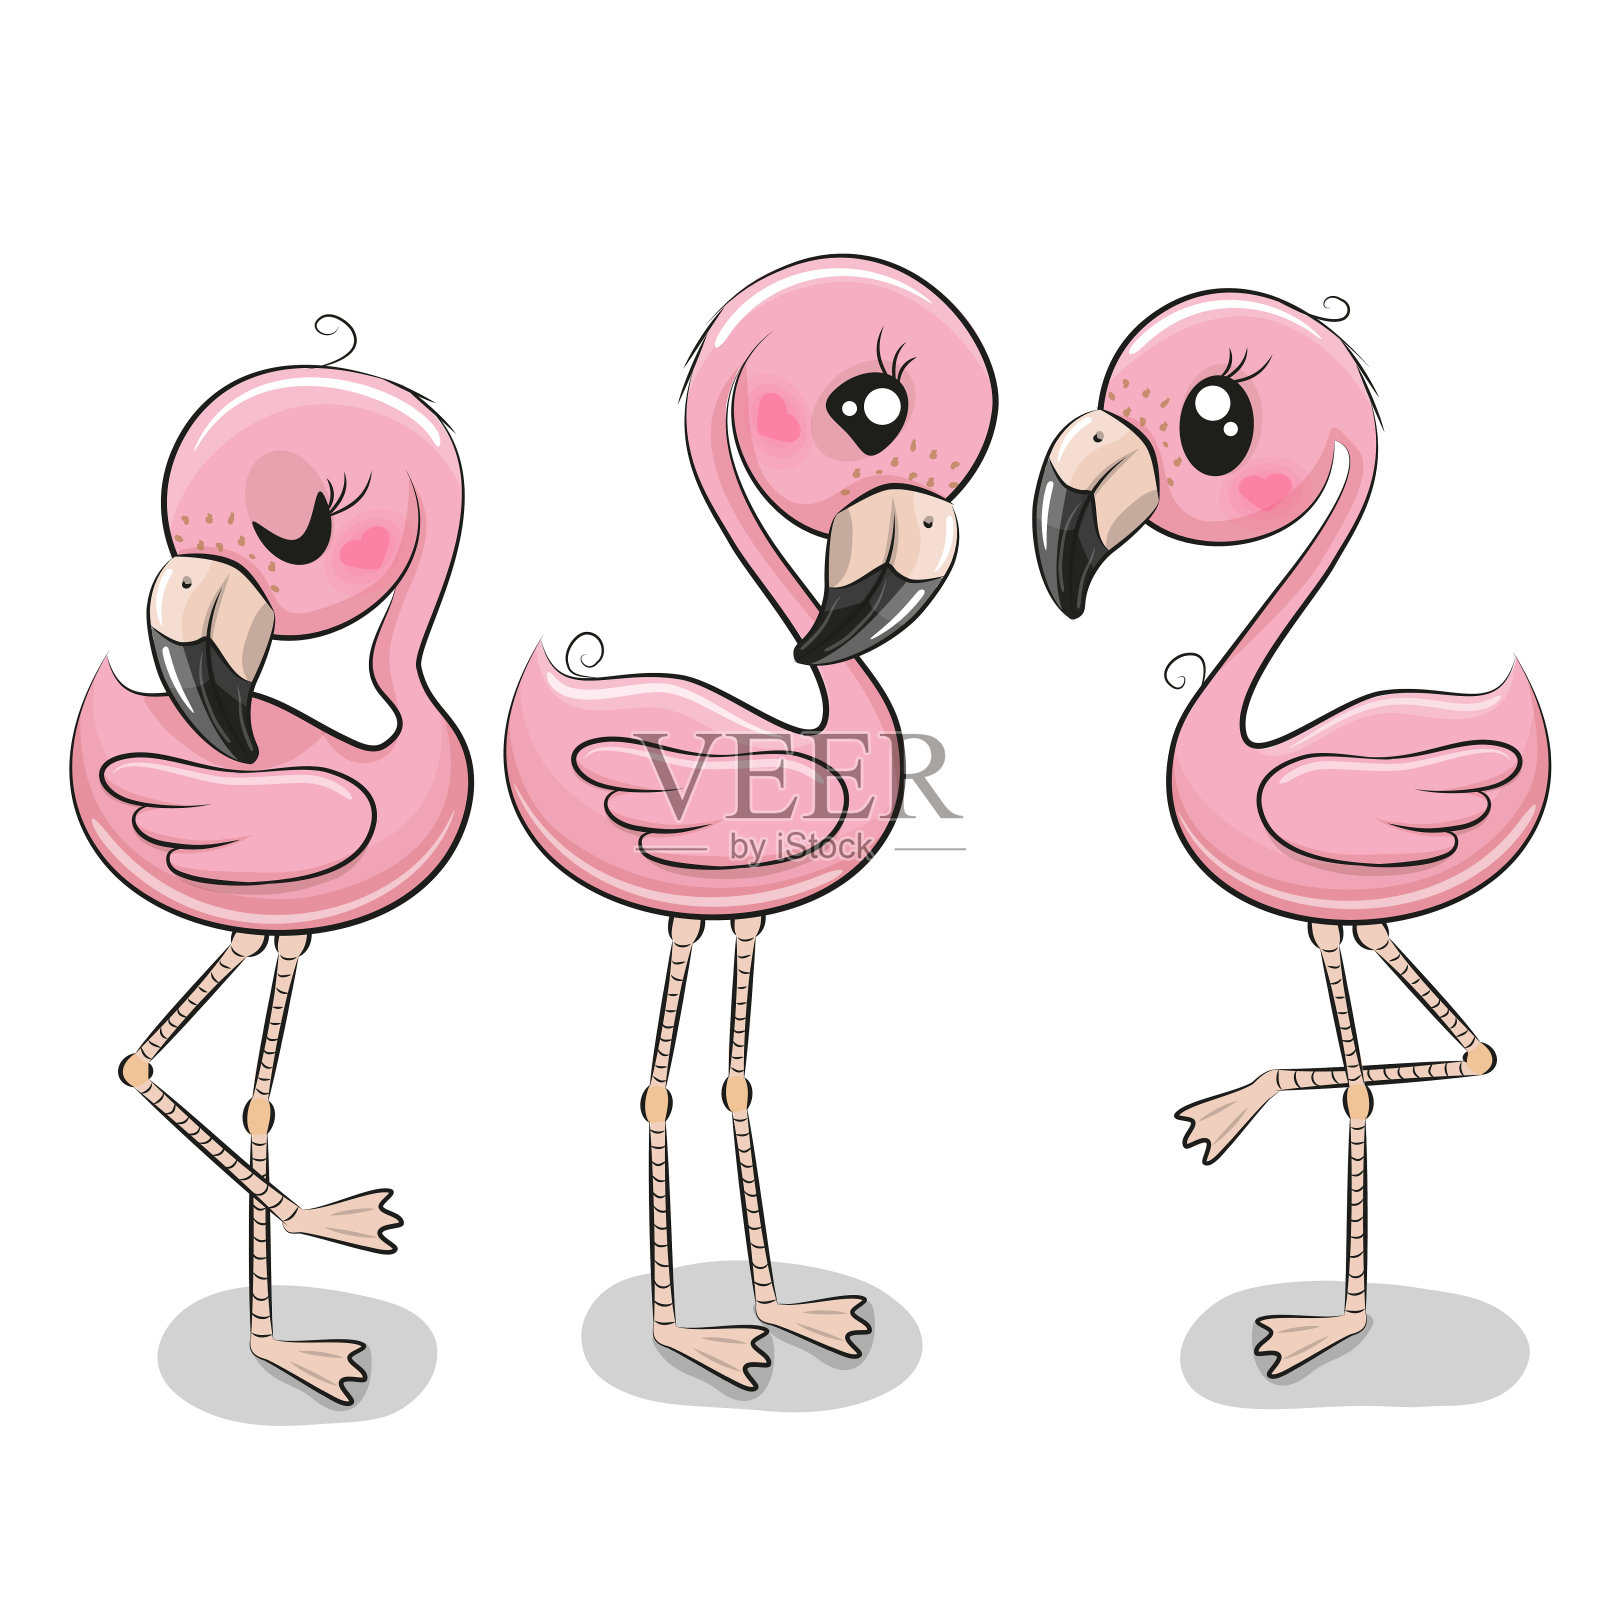 三只可爱的卡通火烈鸟插画图片素材